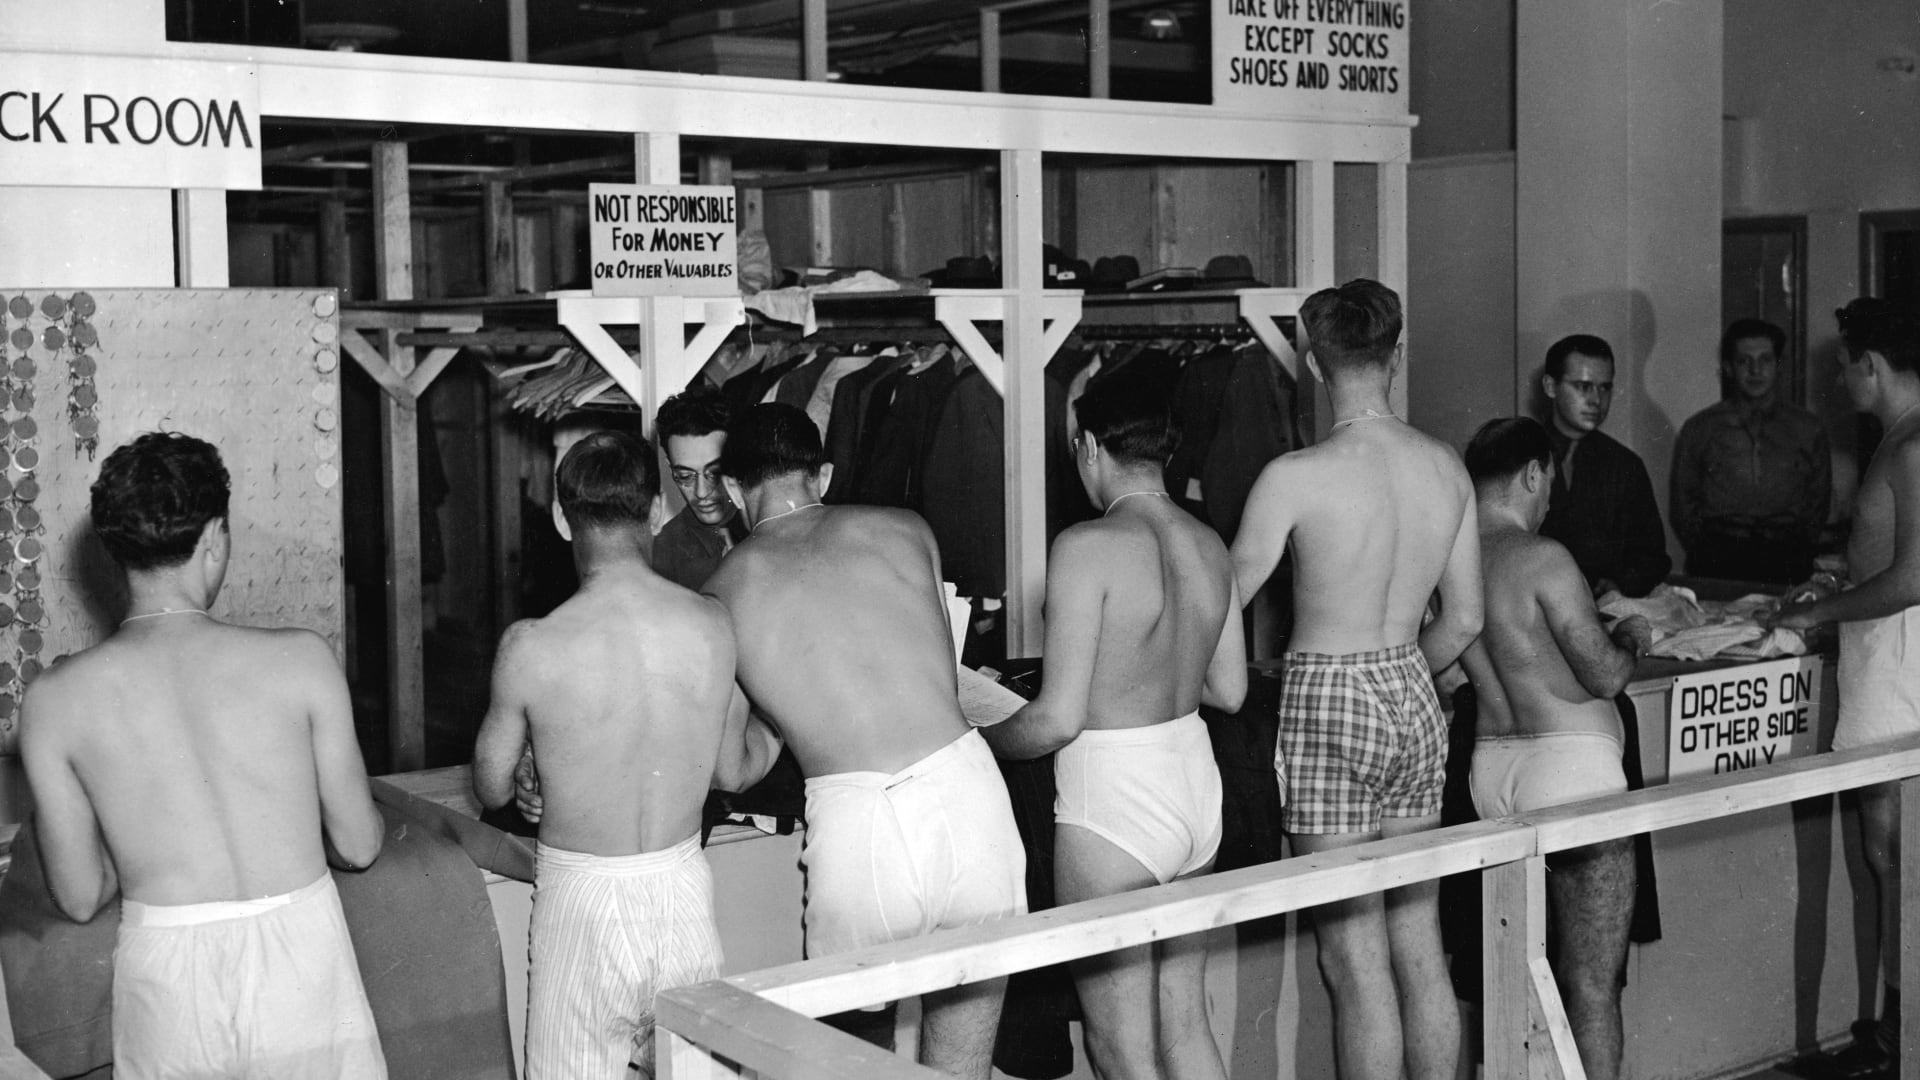 مجندون يرتدون ملابسهم الداخلية وينتظرون في الصف في منشأة عسكرية من العام 1944.